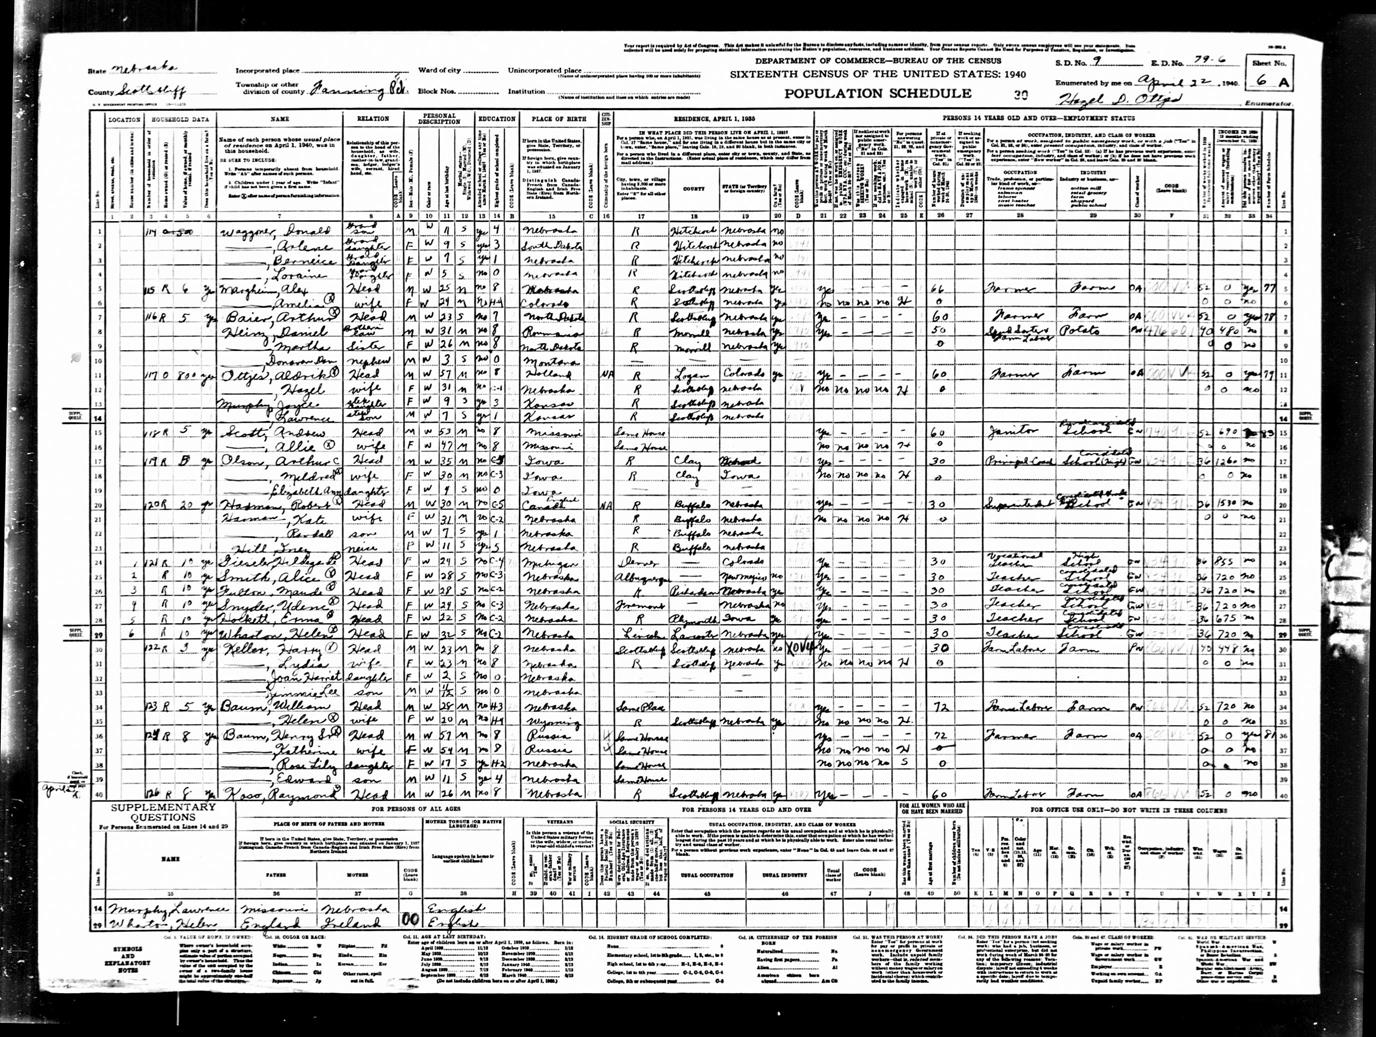 William Baum - 1940 United States Federal Census